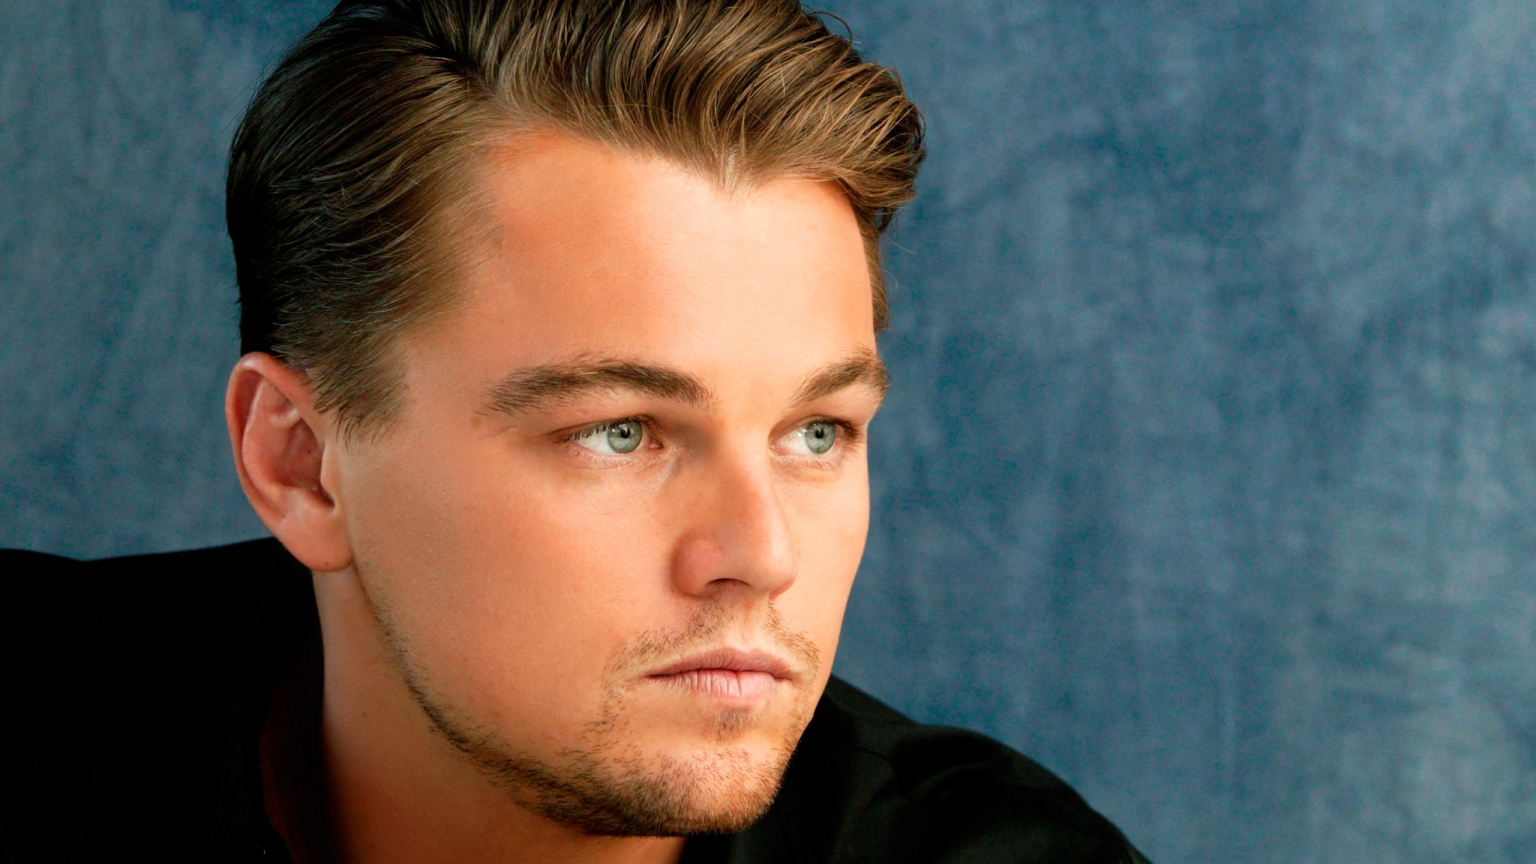 Beautiful Leonardo DiCaprio for 1536 x 864 HDTV resolution